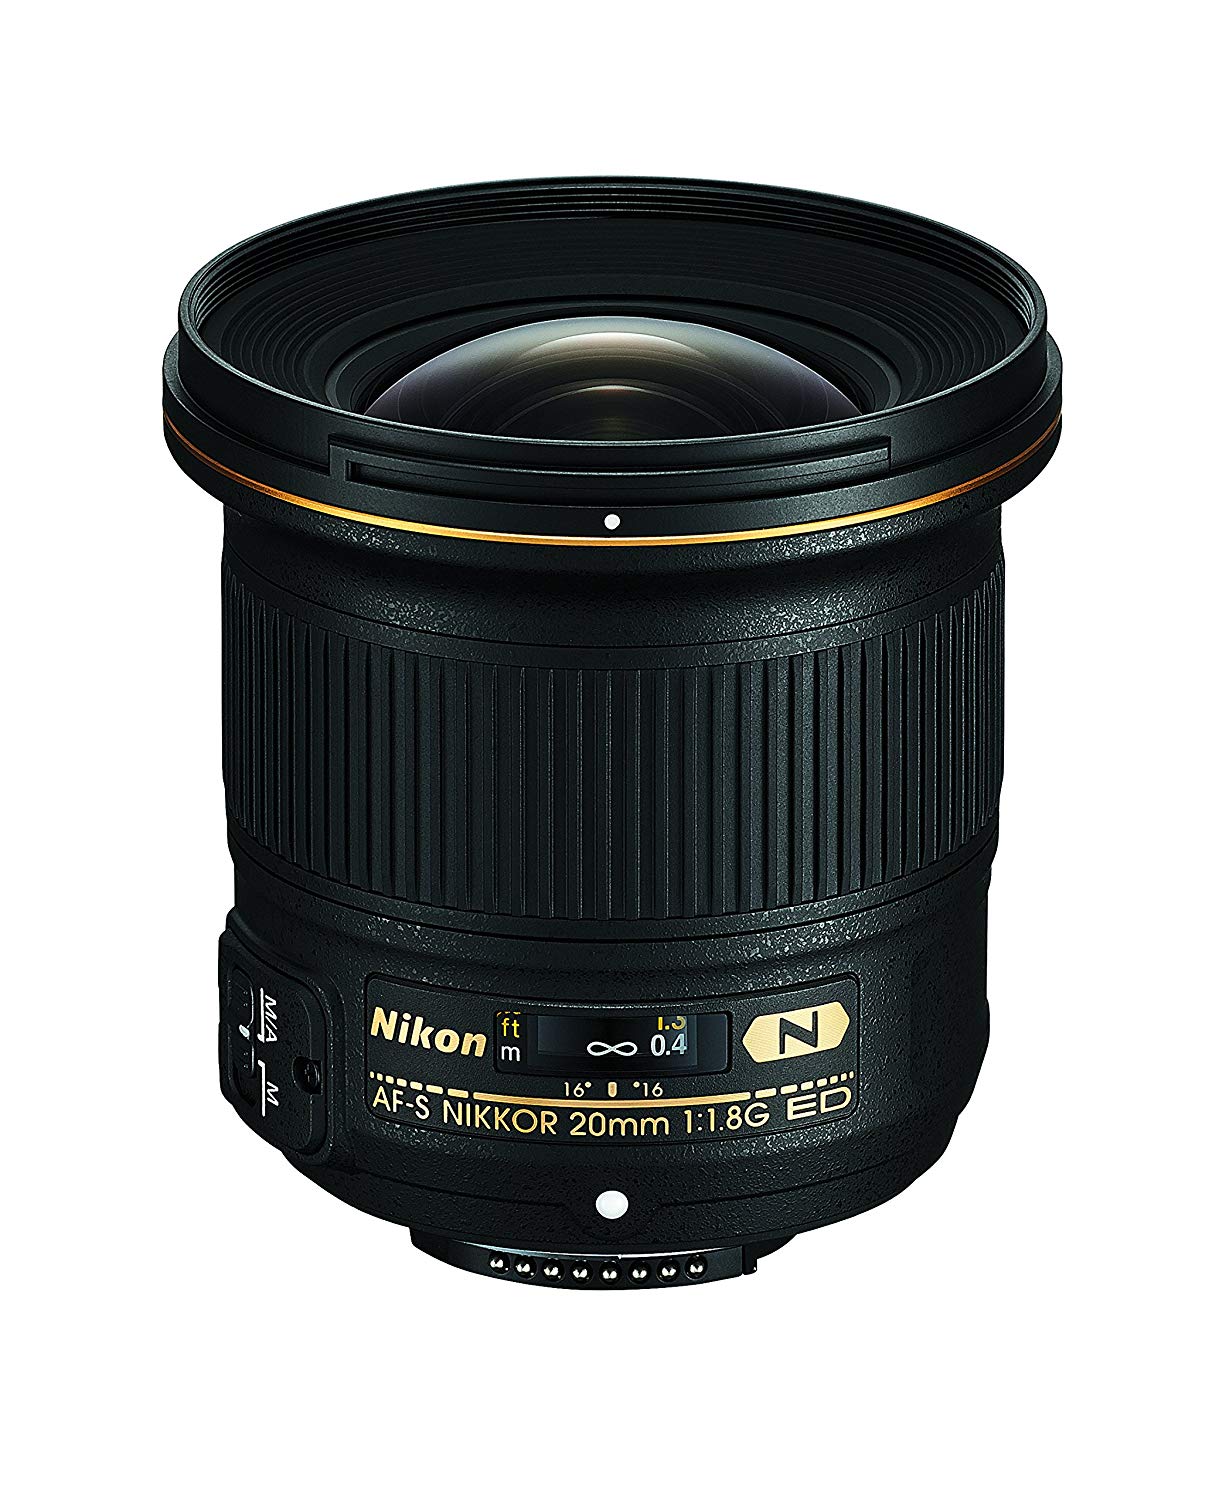 Nikon AF-S FX NIKKOR 20mm f+1.8G ED Fixed Lens with Auto Focus for DSLR Cameras